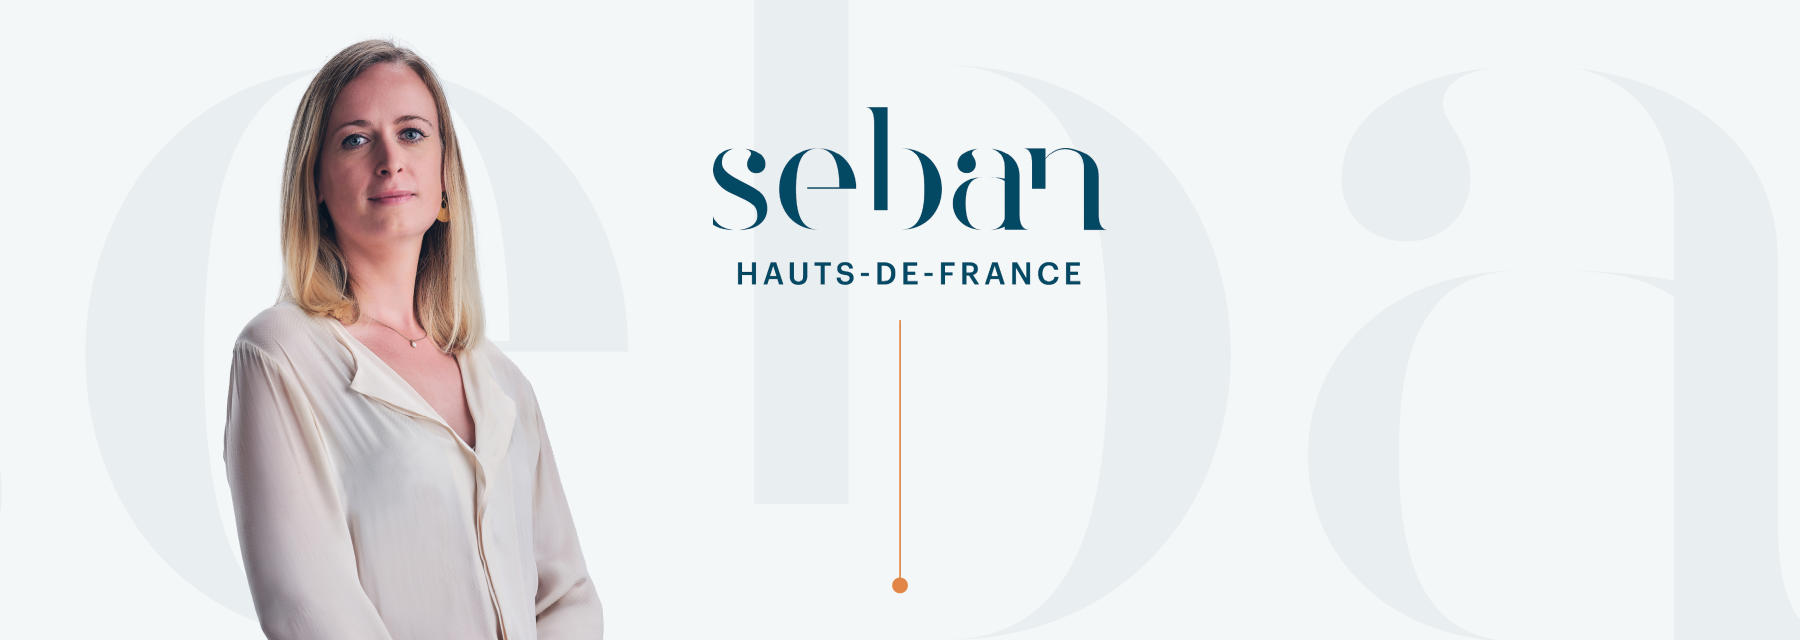 SEBAN HAUTS-DE-FRANCE